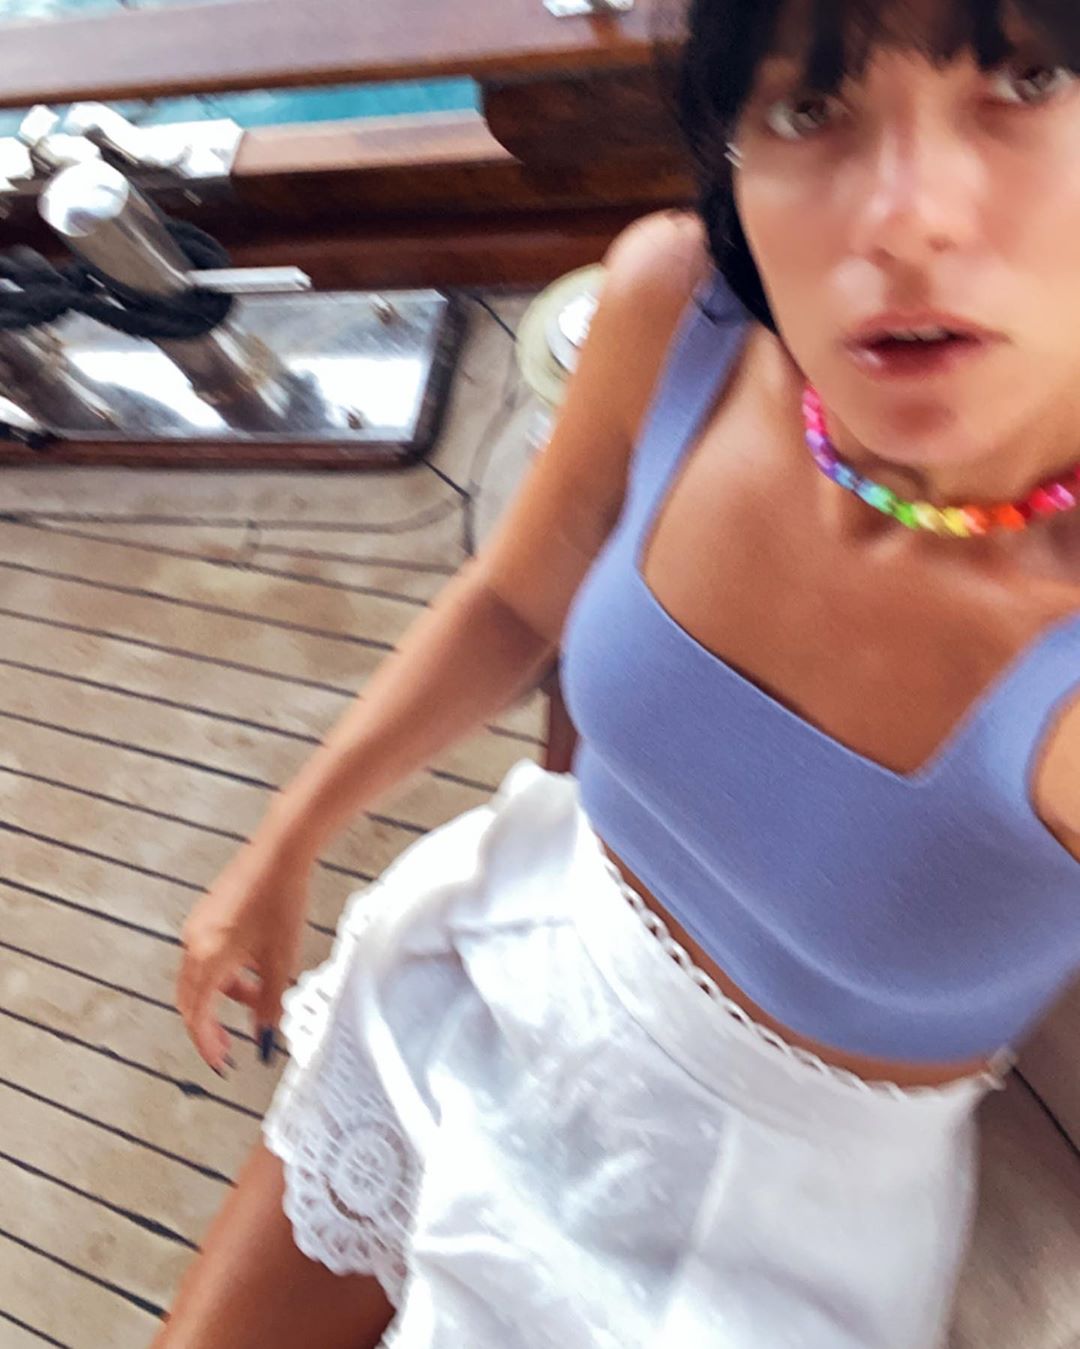 Fotos n°2 : Lily Allen se divierte de vacaciones!